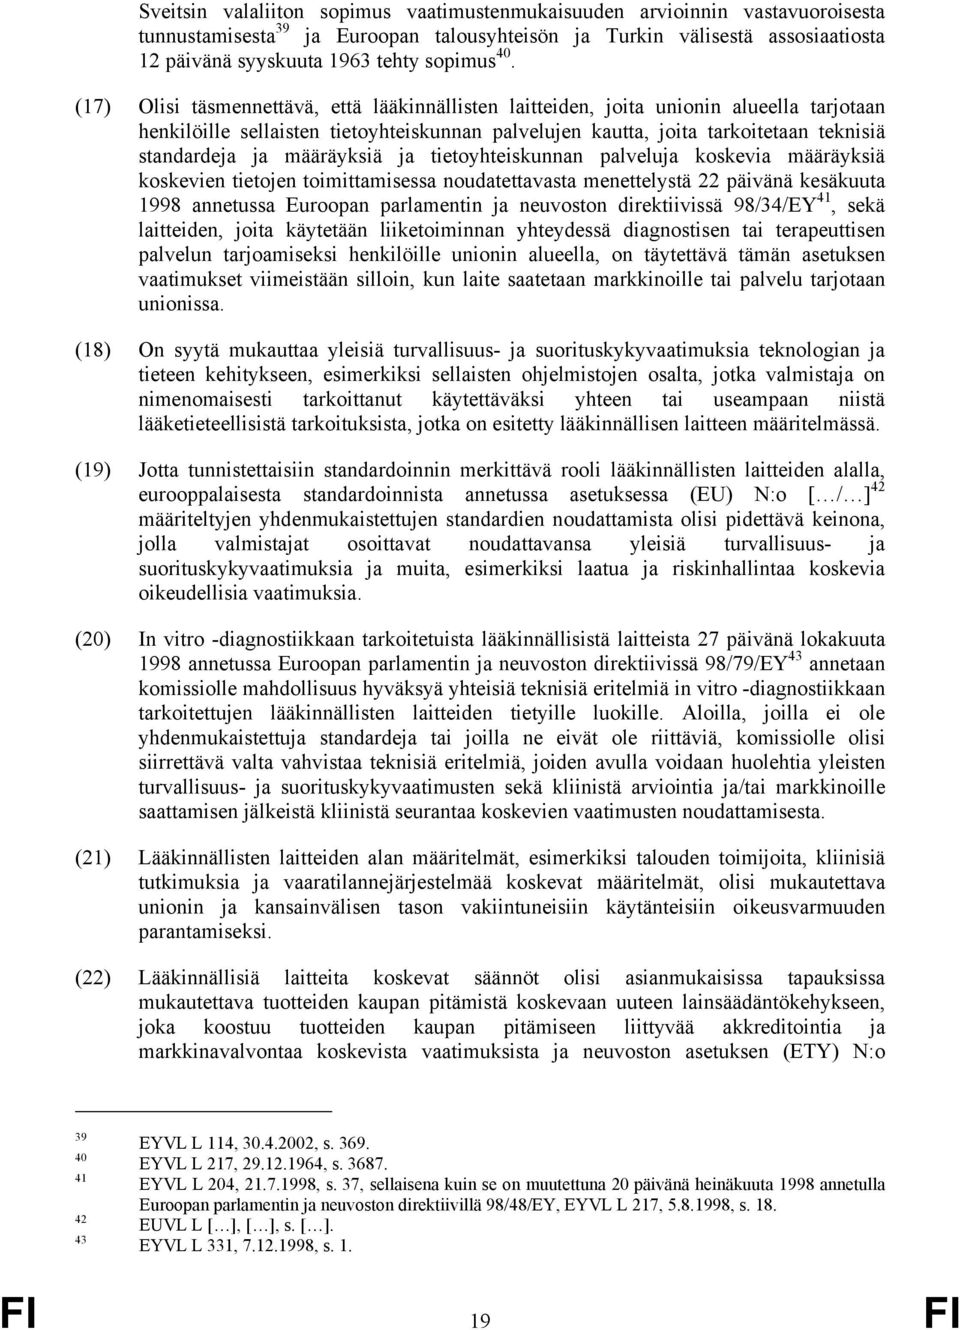 määräyksiä ja tietoyhteiskunnan palveluja koskevia määräyksiä koskevien tietojen toimittamisessa noudatettavasta menettelystä 22 päivänä kesäkuuta 1998 annetussa Euroopan parlamentin ja neuvoston